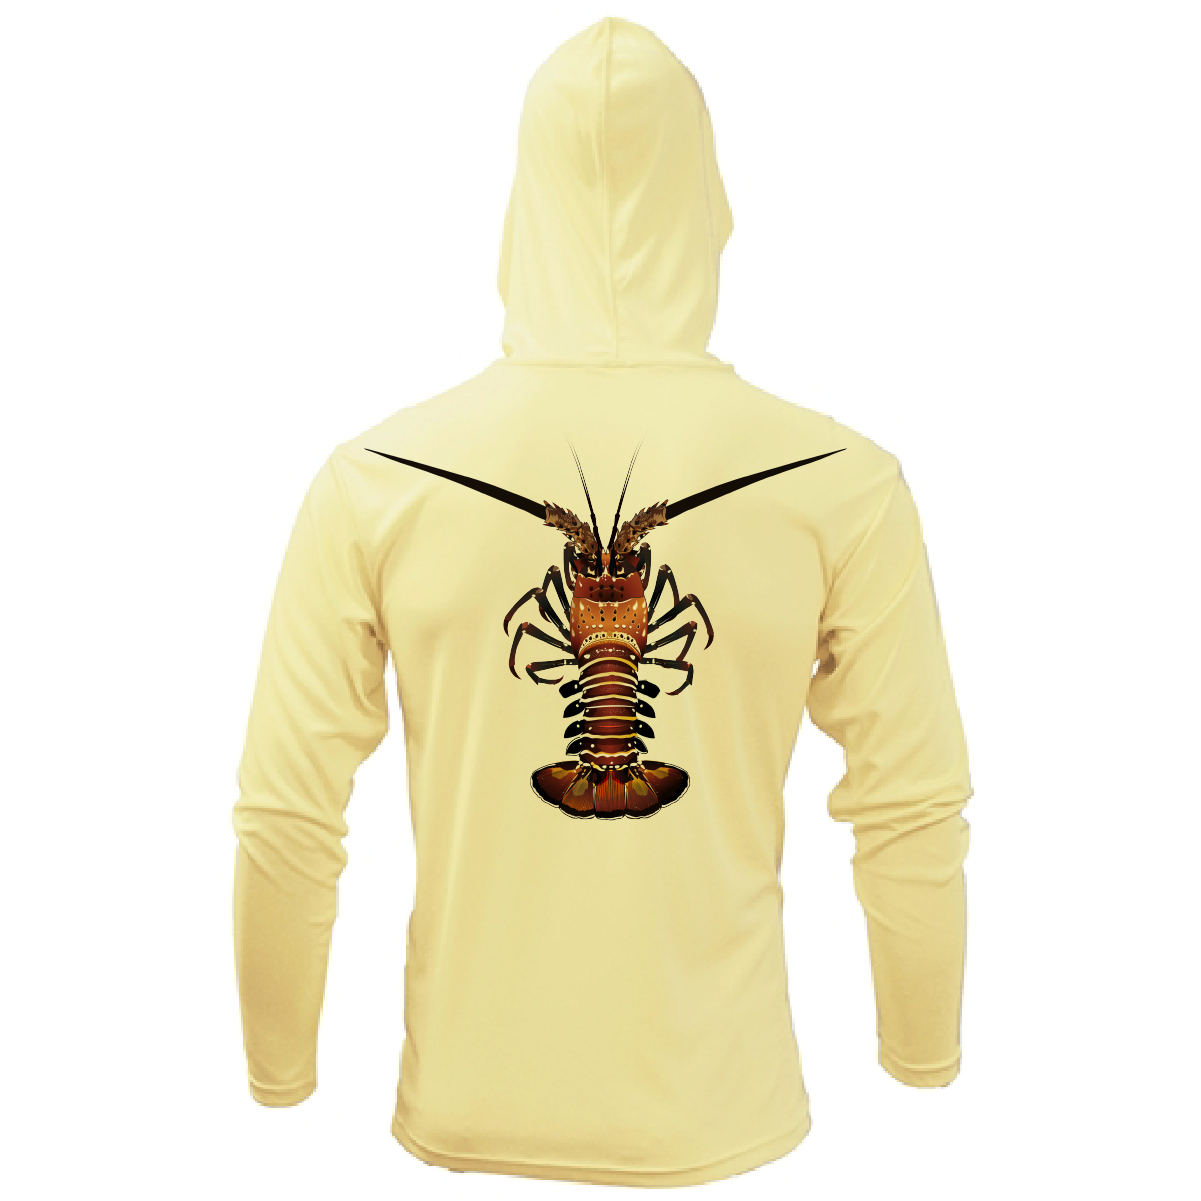 Florida Keys Realistic Lobster Long Sleeve UPF 50+ Dry-Fit Hoodie